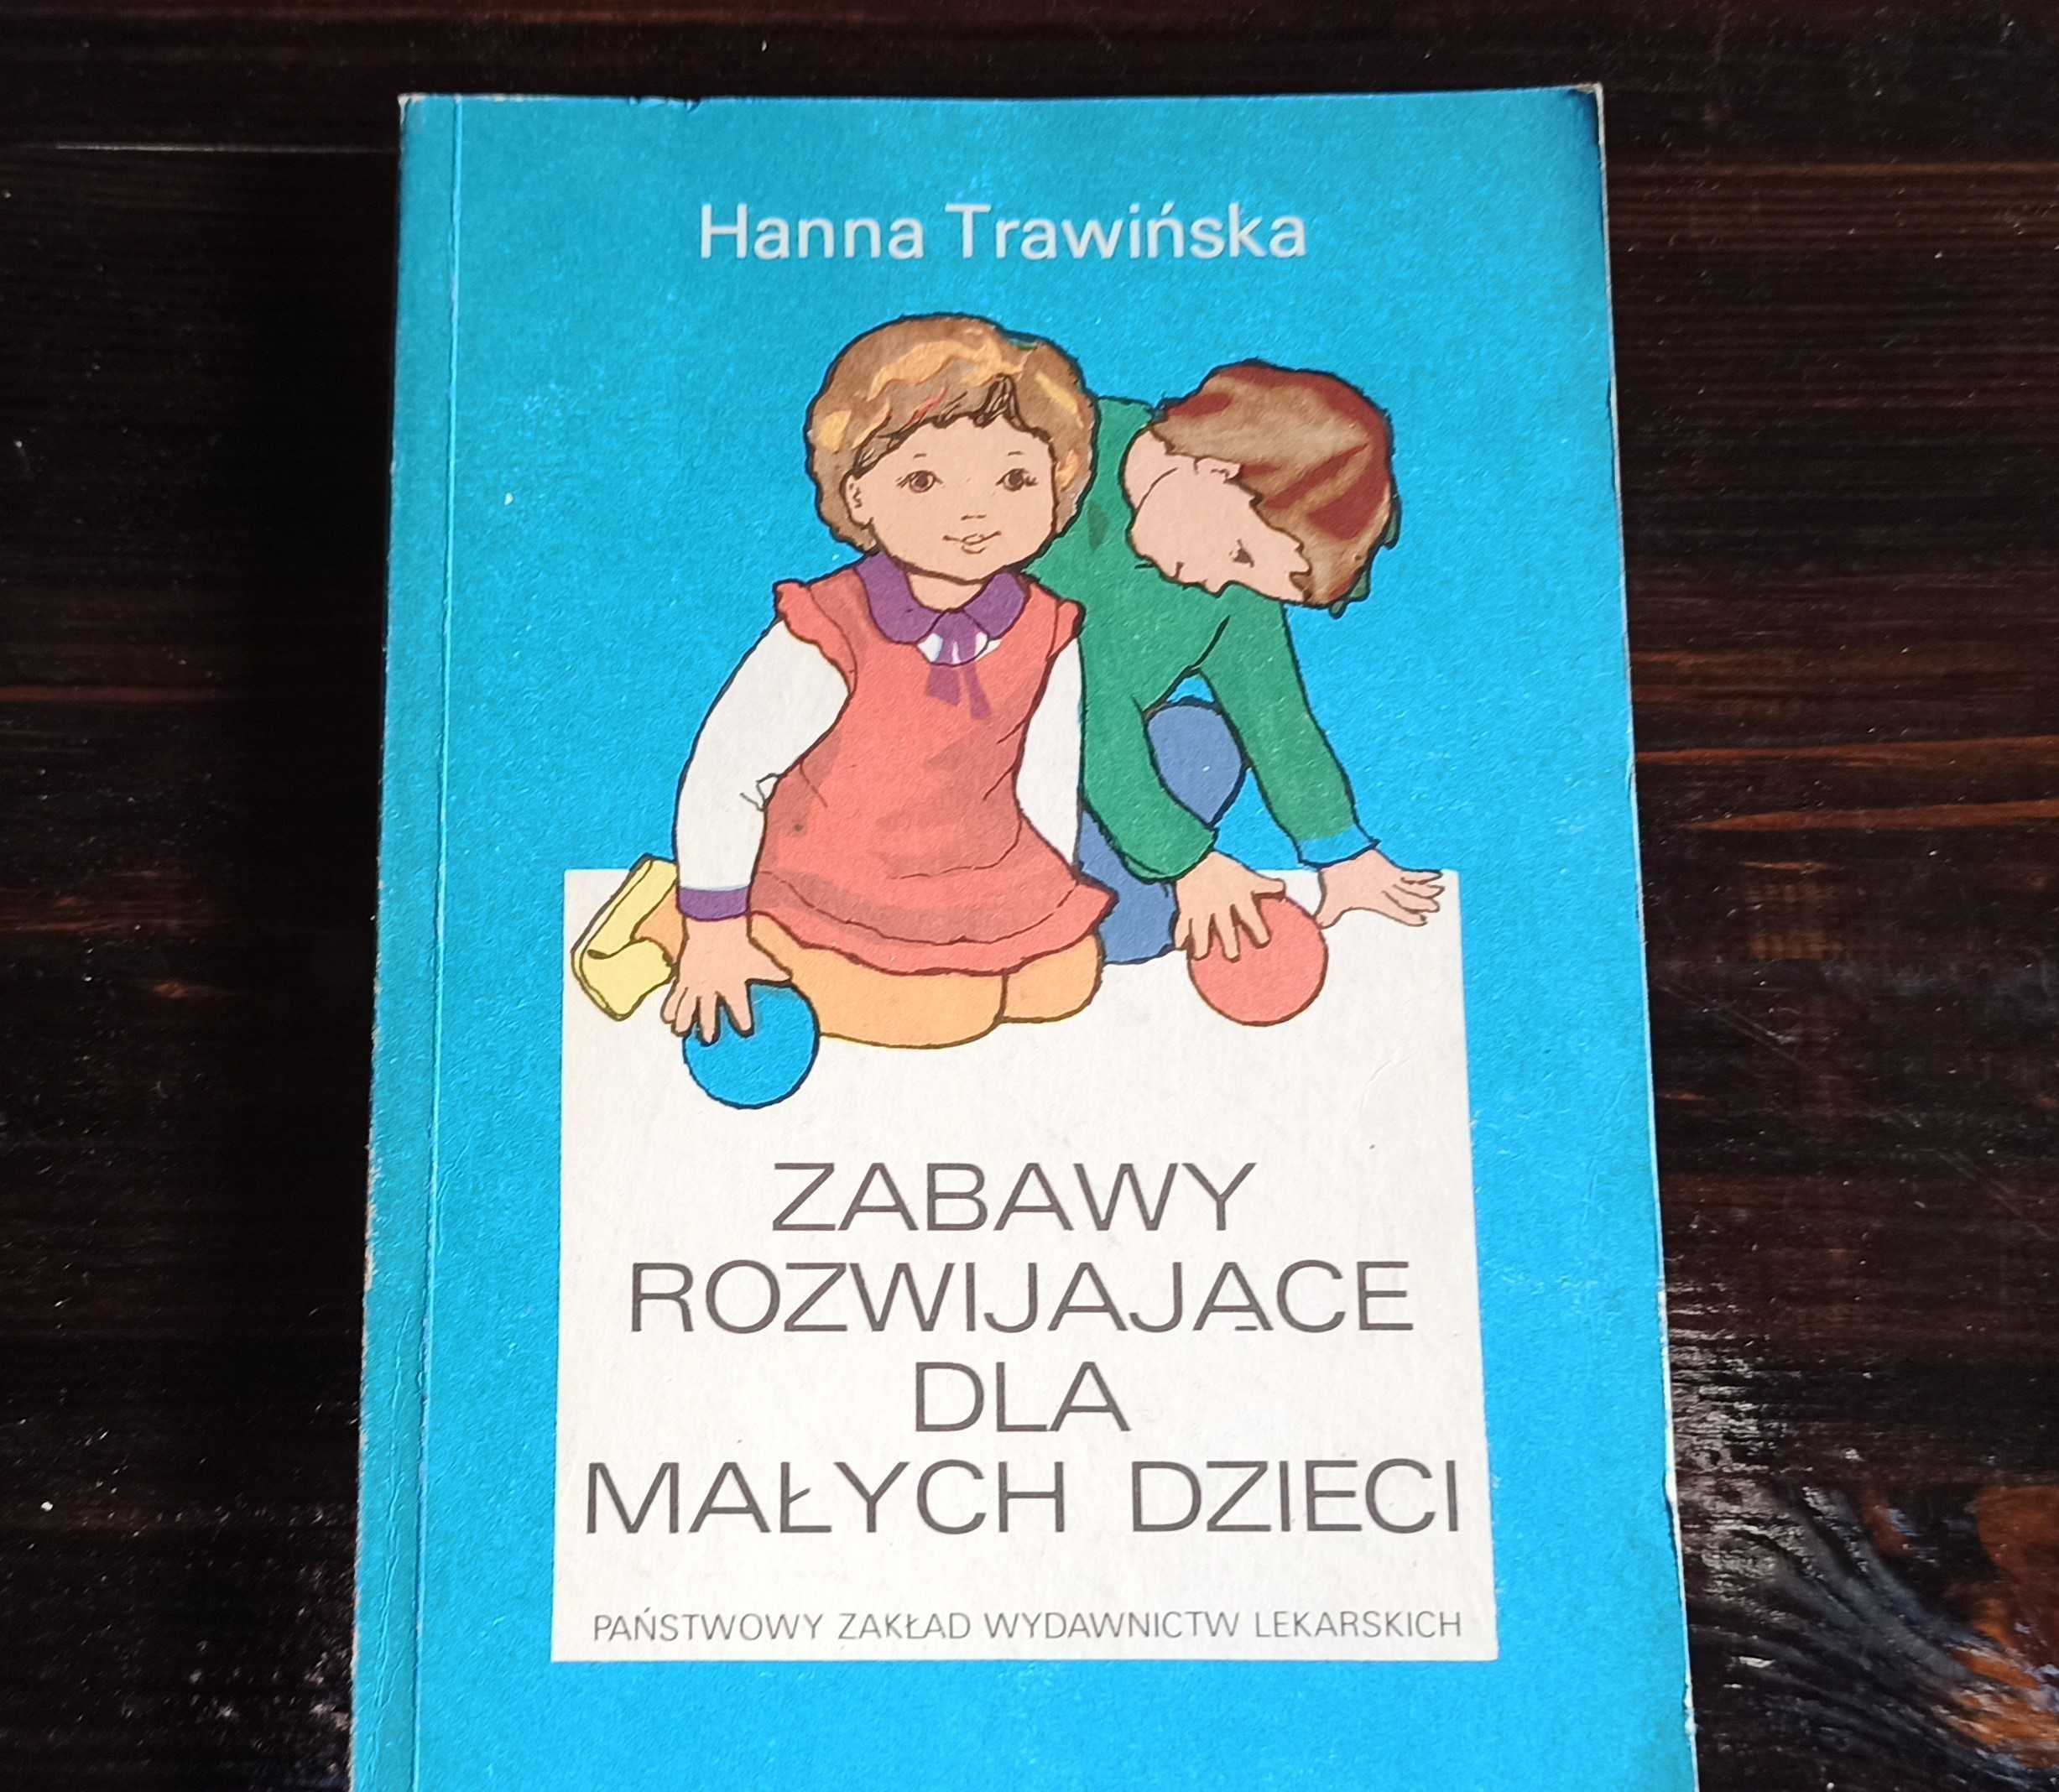 Hanna Trawińska-"Zabawy rozwijające dla małych dzieci"